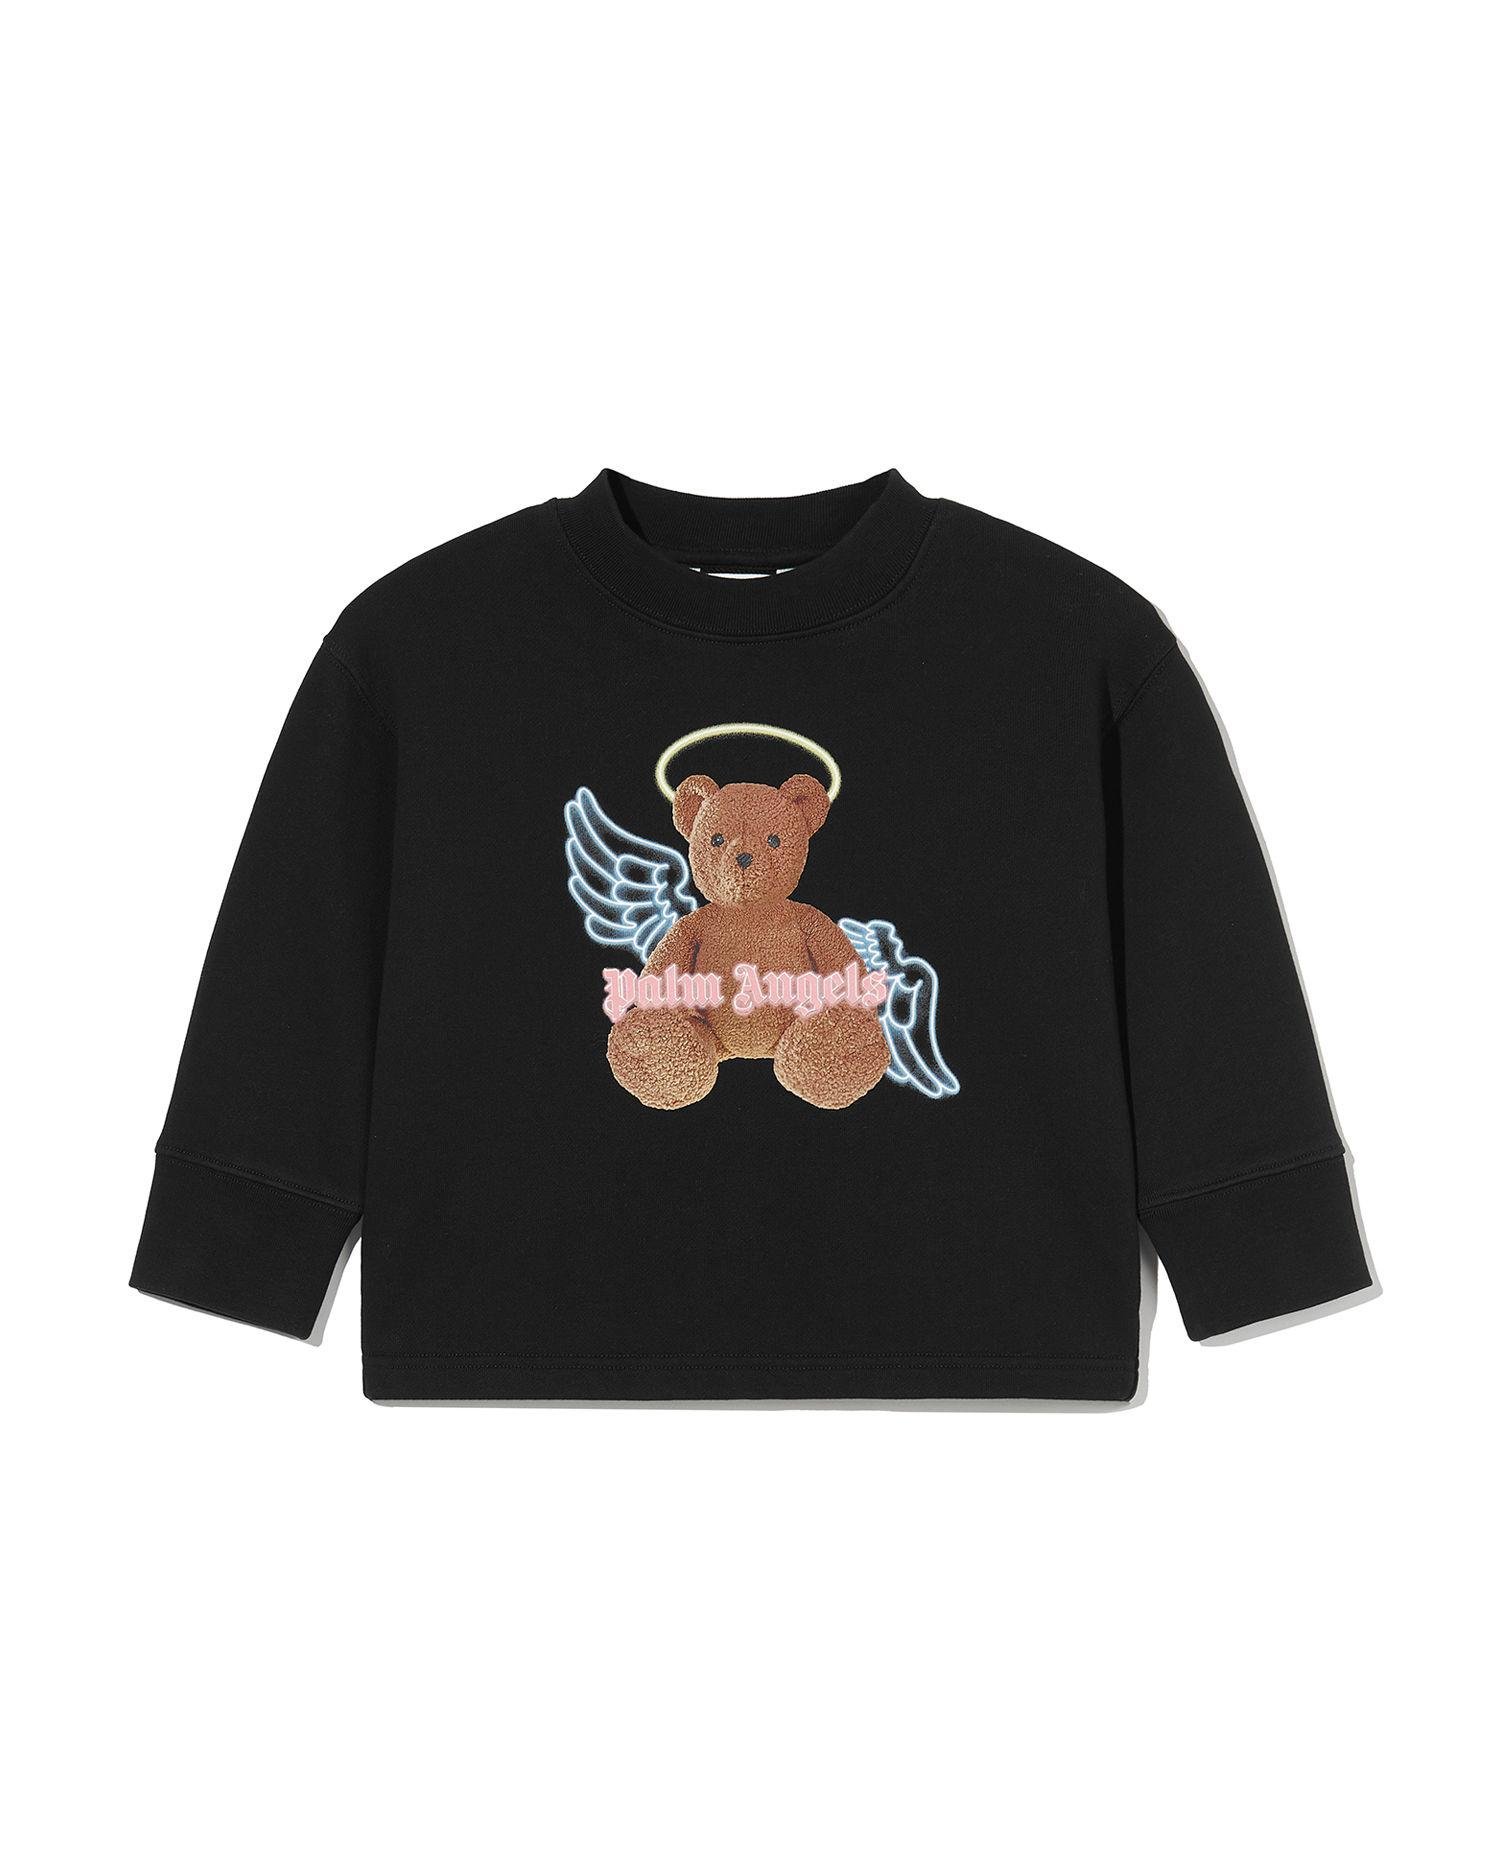 Kids bear angel open back sweatshirt by PALM ANGELS